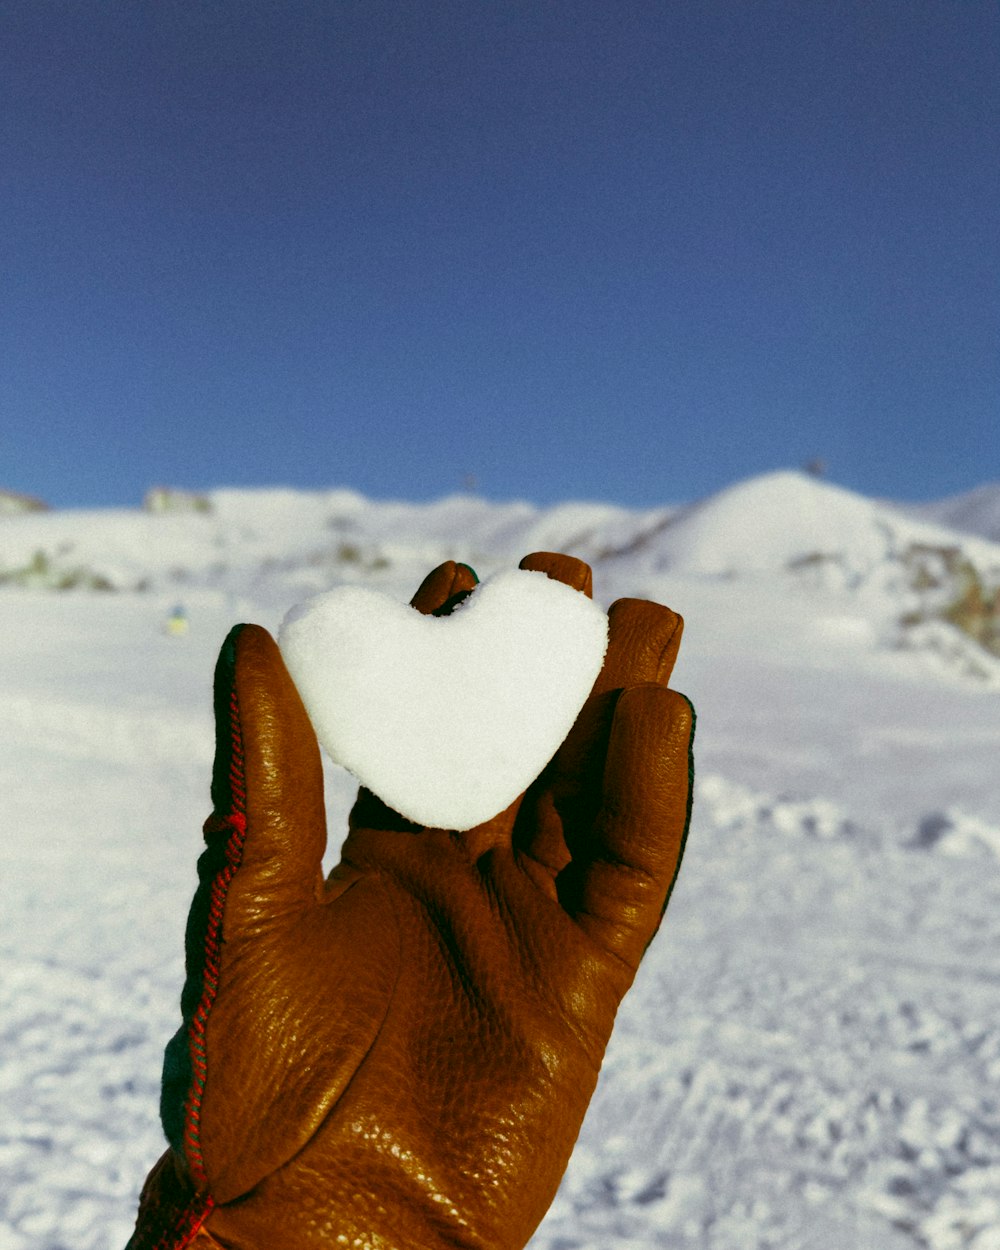 une main gantée tenant un objet en forme de cœur dans la neige